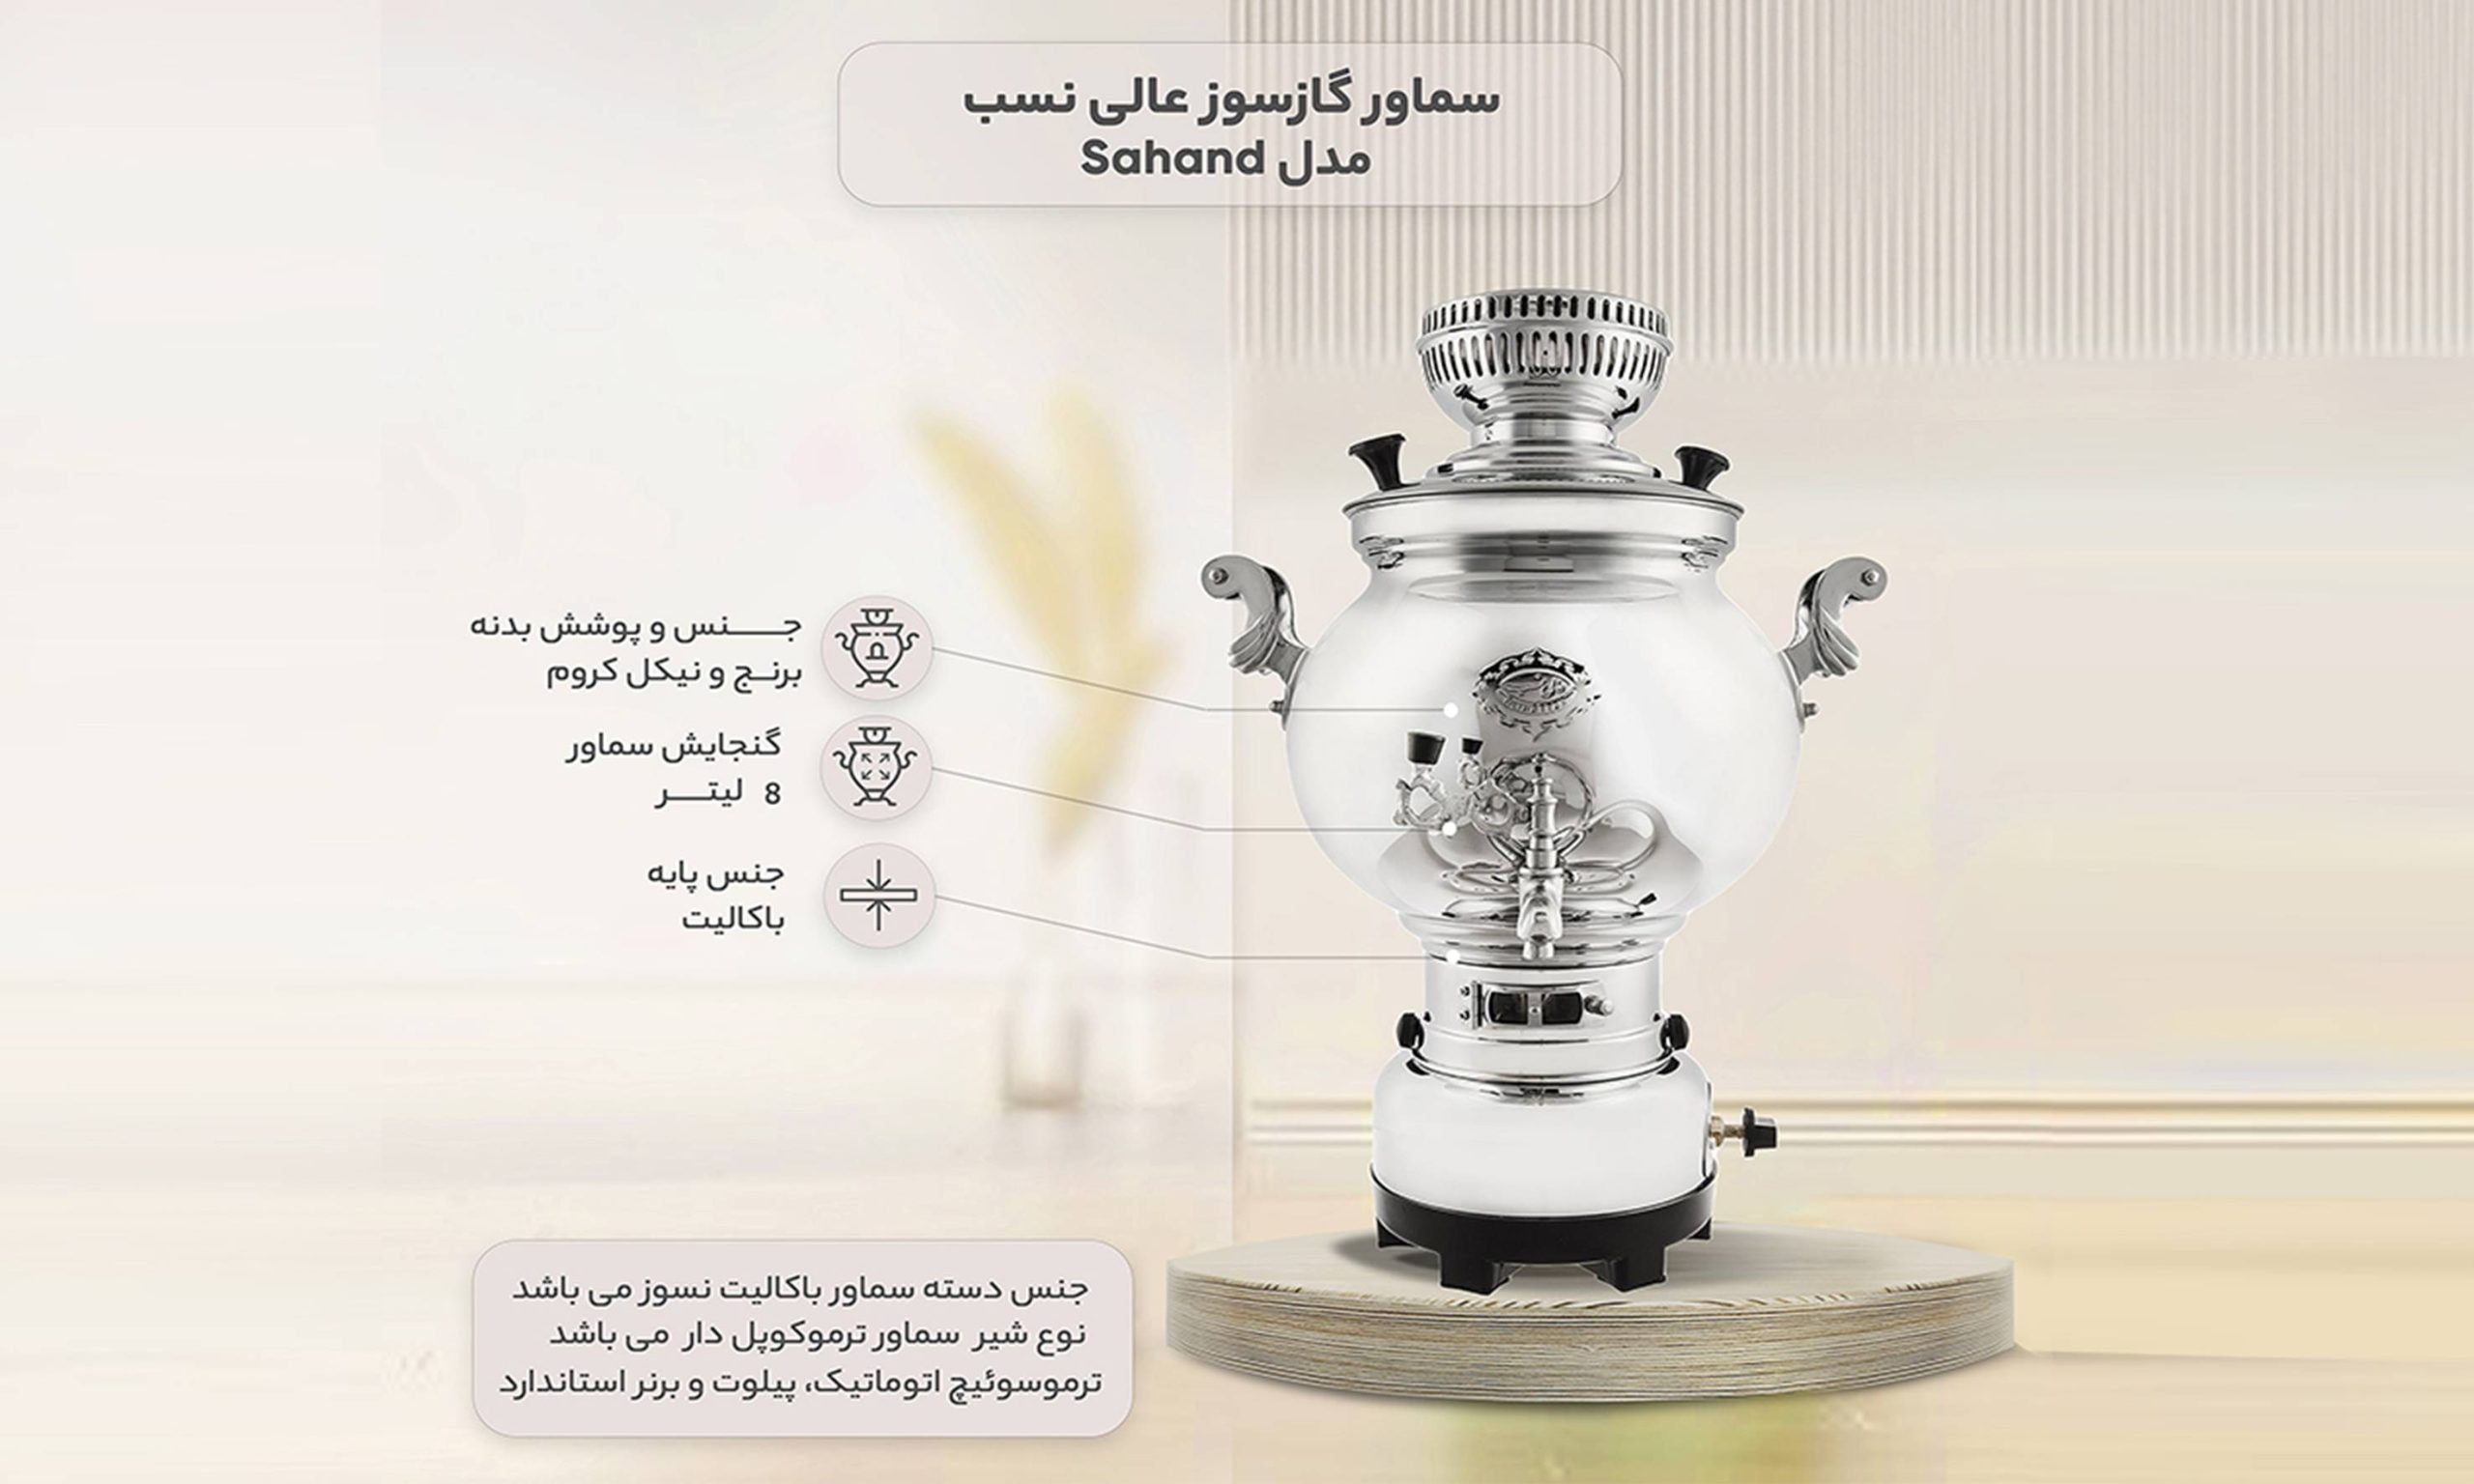 قیمت سماور گازسوز عالی‌نسب مدل Sahand ظرفیت 8 لیتر